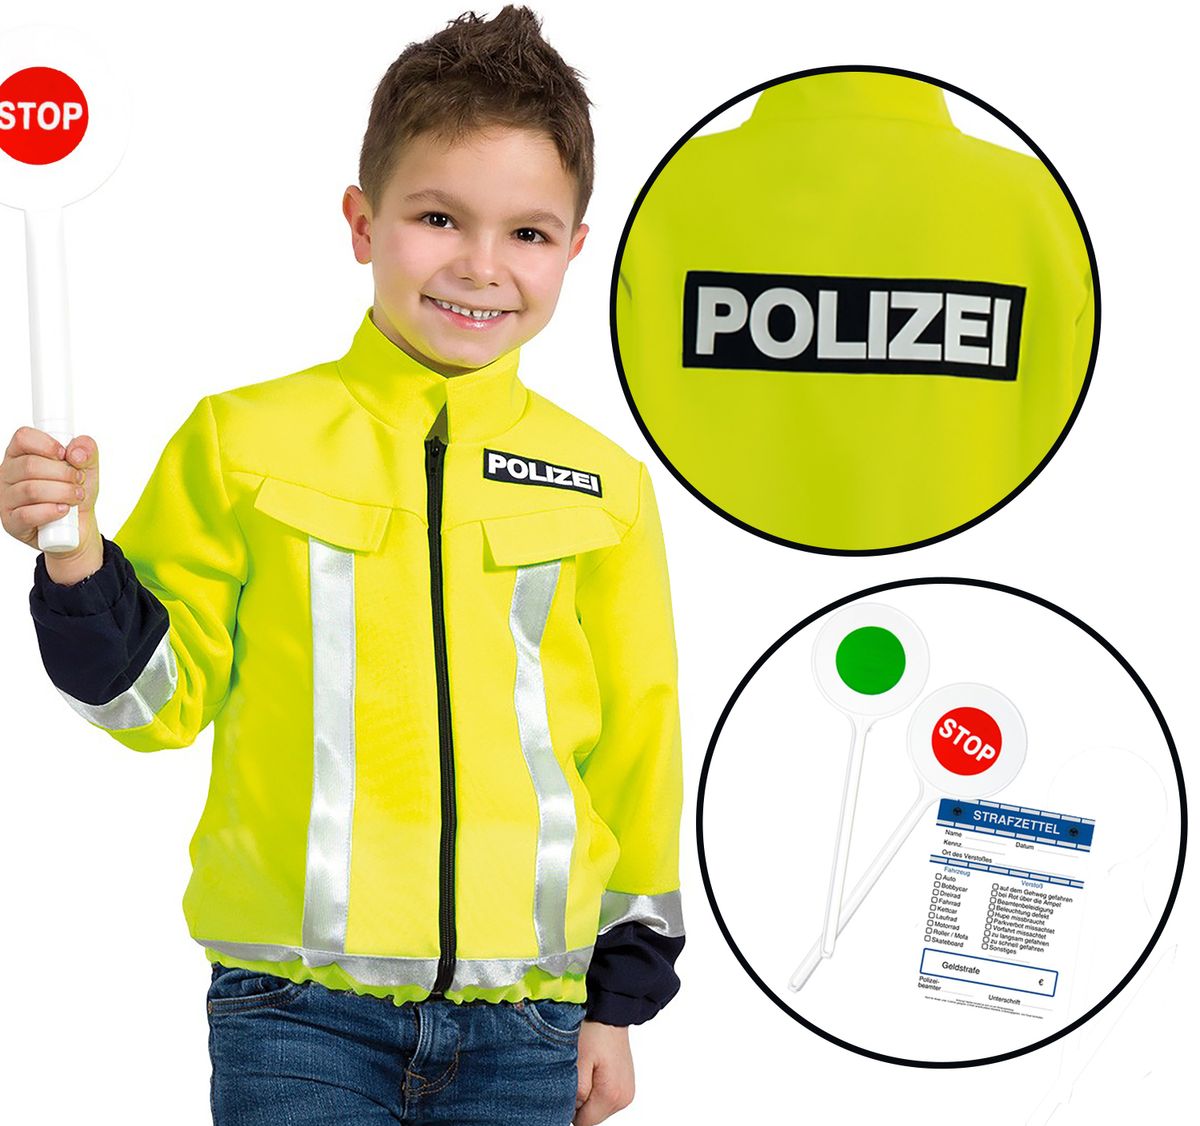 https://bilder.krause-sohn.de/item/images/13298/full/13298-Unisex-Kinder-Polizist-Neon-Jacke-mit-Aufschrift-Polizei-inkl--Kelle-und-Strafzettel_6.jpg